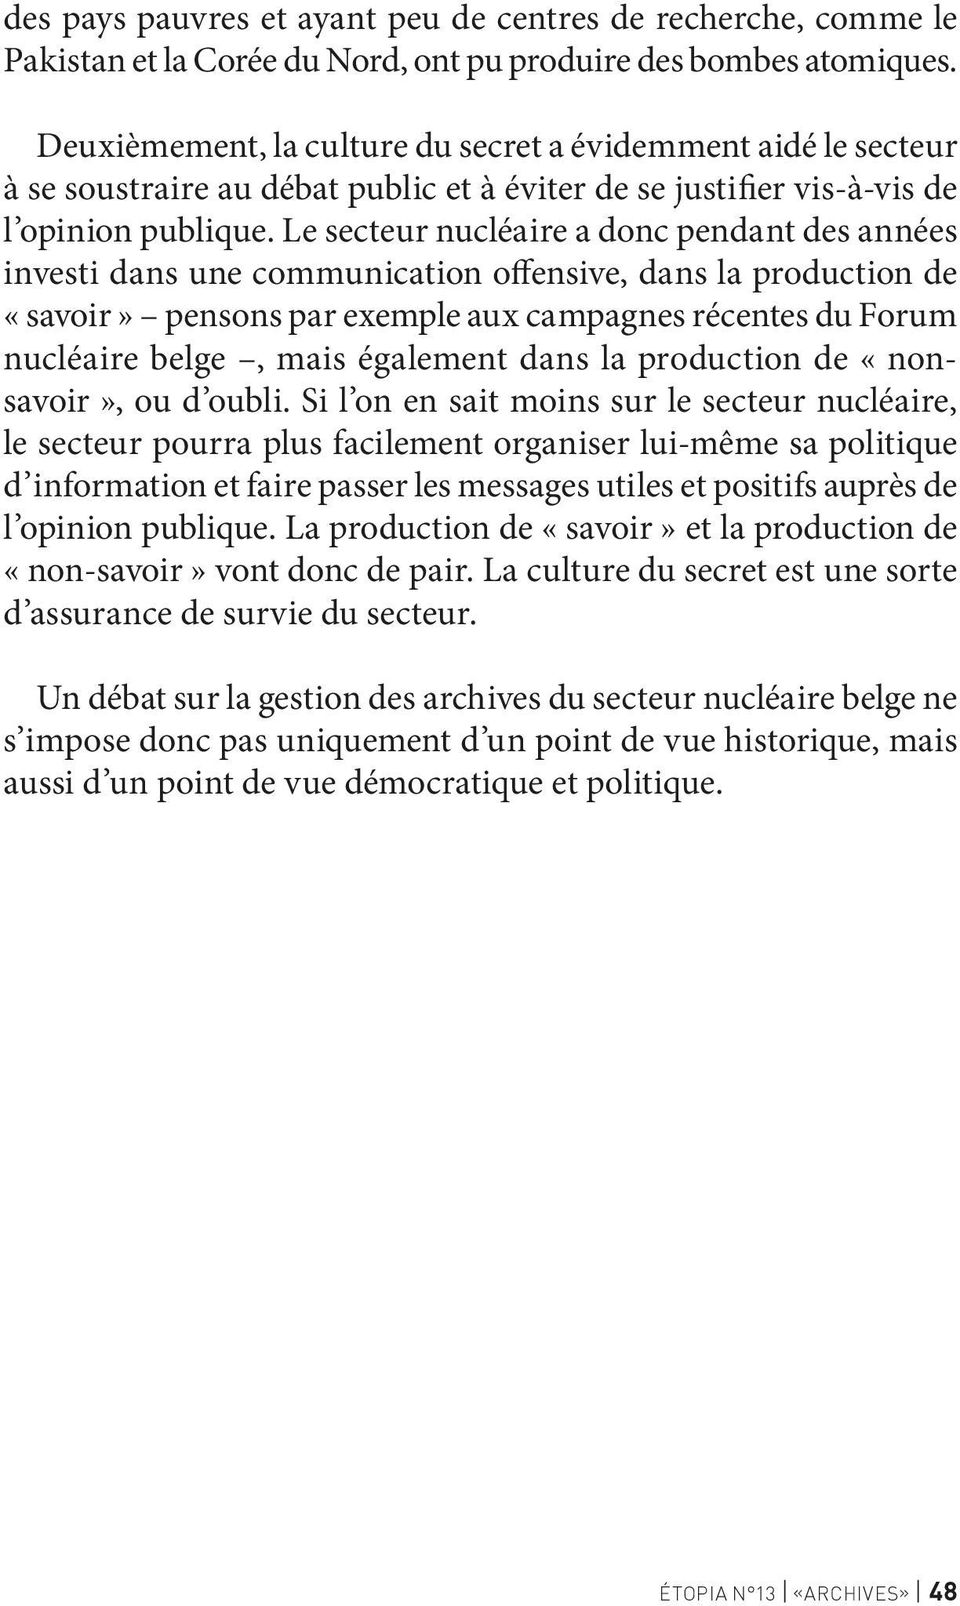 Le secteur nucléaire a donc pendant des années investi dans une communication offensive, dans la production de «savoir» pensons par exemple aux campagnes récentes du Forum nucléaire belge, mais